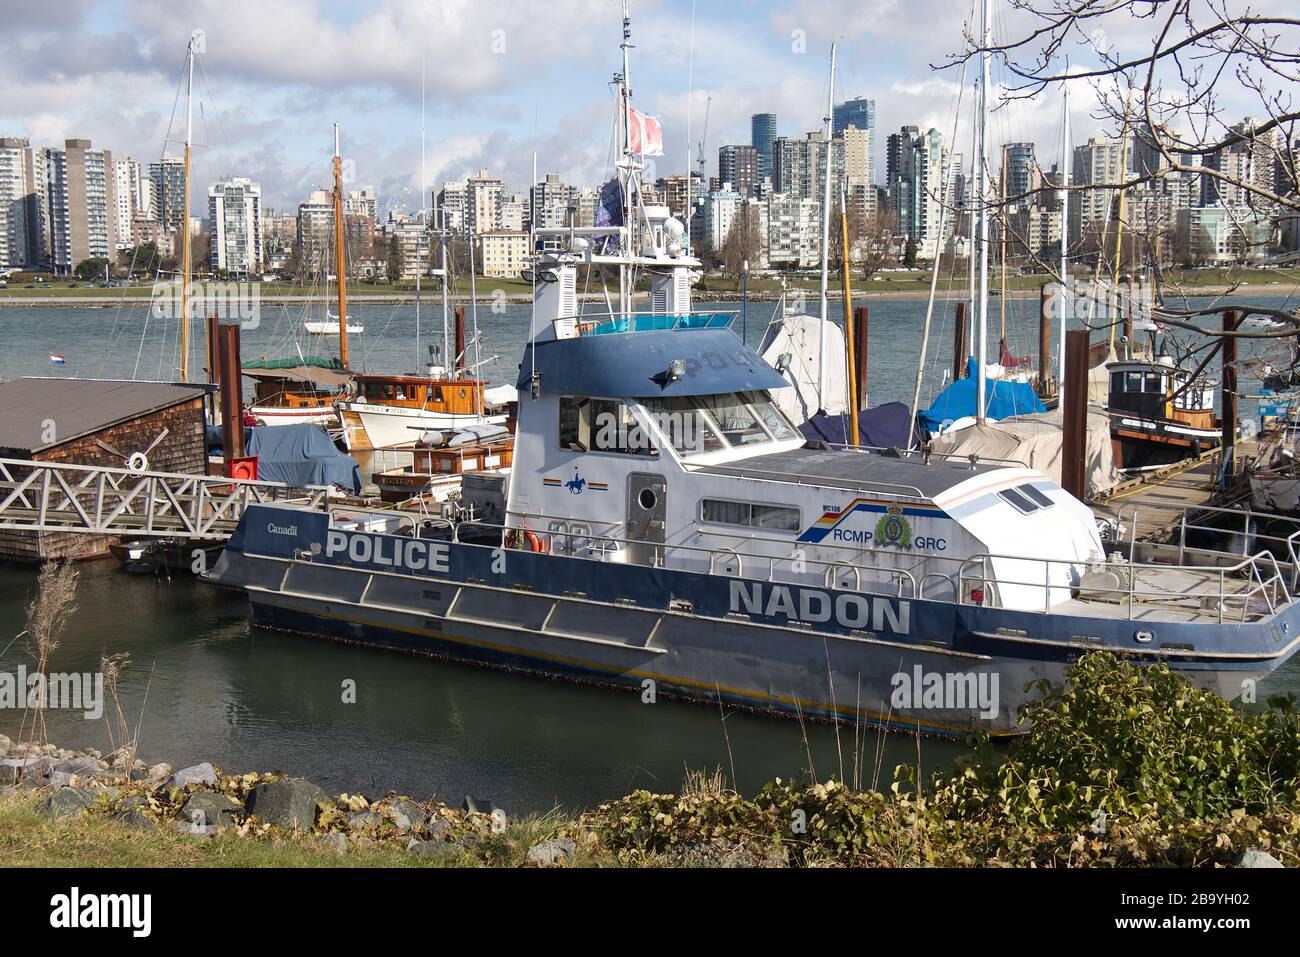 Vancouver, Canadá - 29 de febrero de 2020: Barco de la Real Policía montada Canadiense (RCMP) en el puerto Heritage con paisaje urbano en el fondo Foto de stock